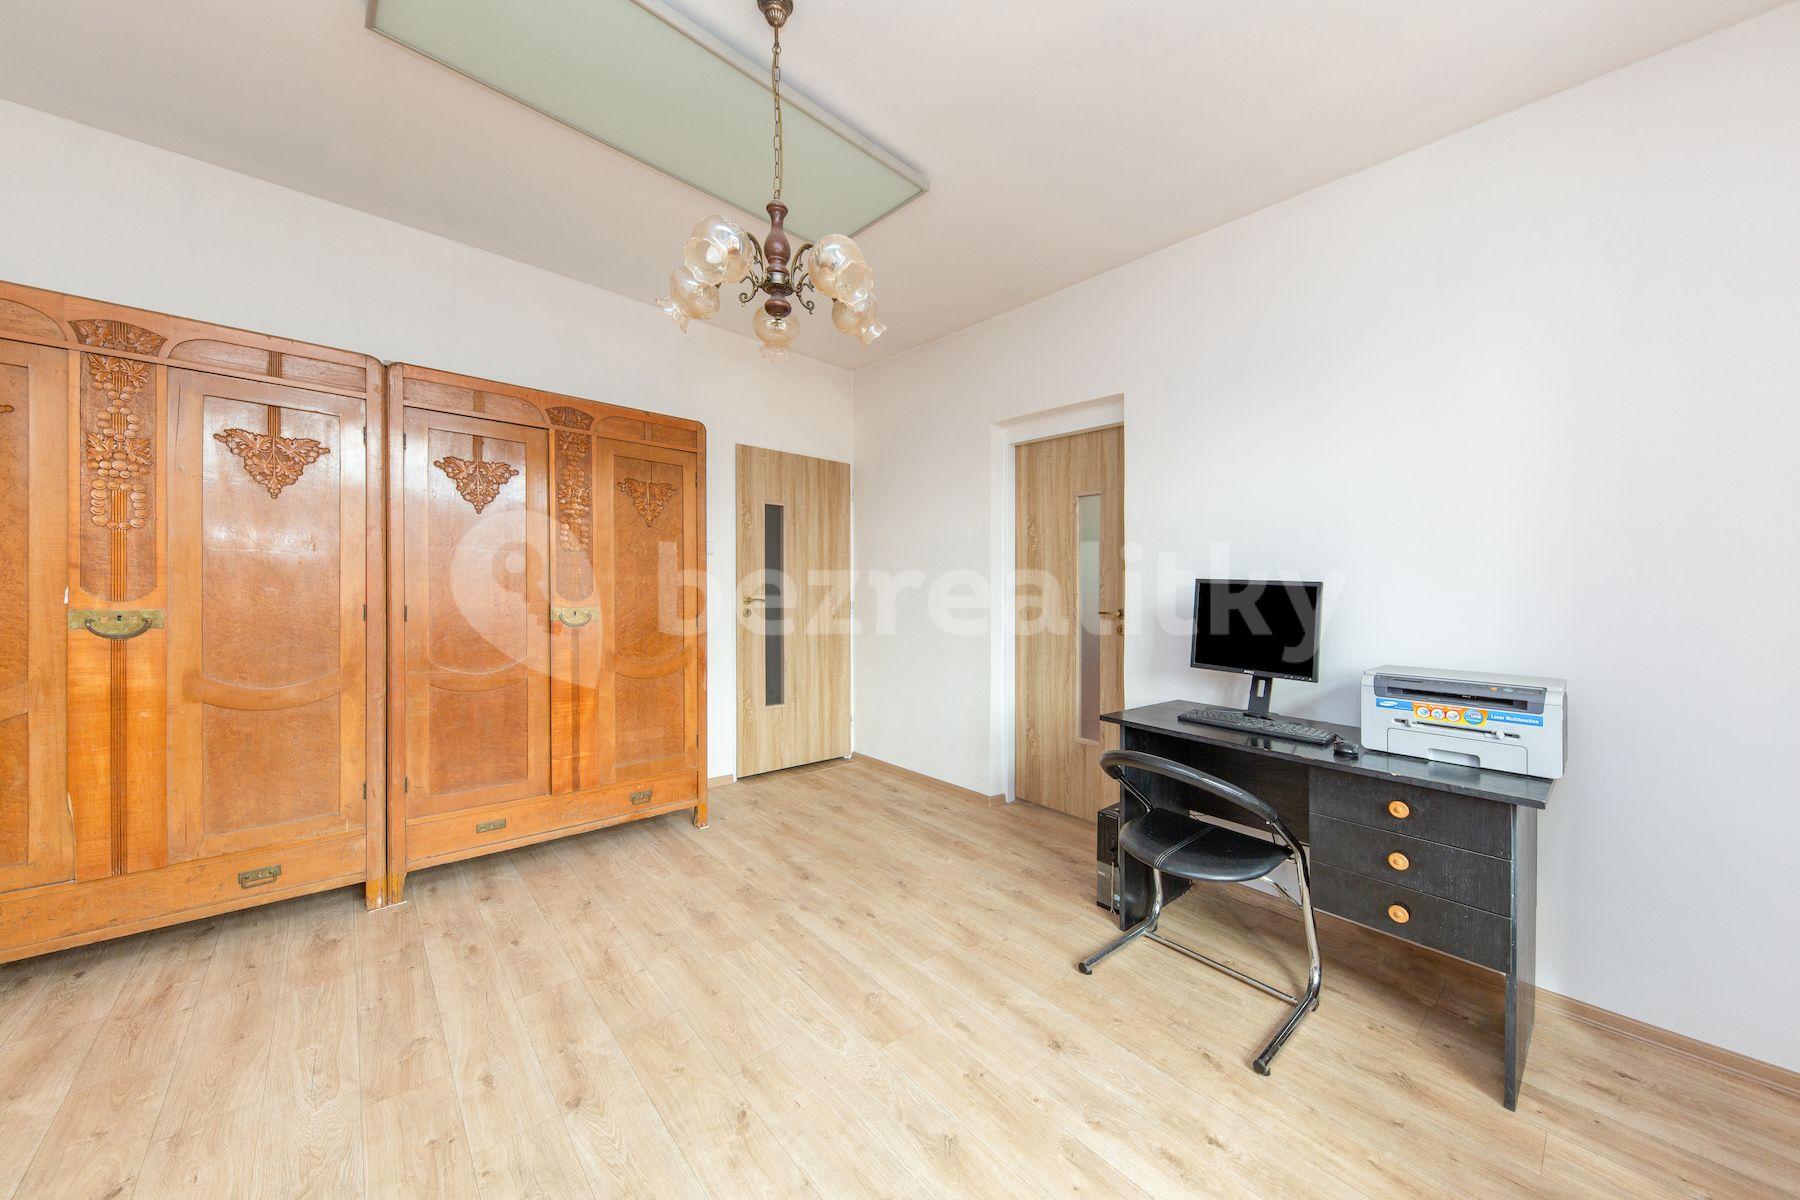 2 bedroom with open-plan kitchen flat for sale, 61 m², Josefa Černíka, Luhačovice, Zlínský Region